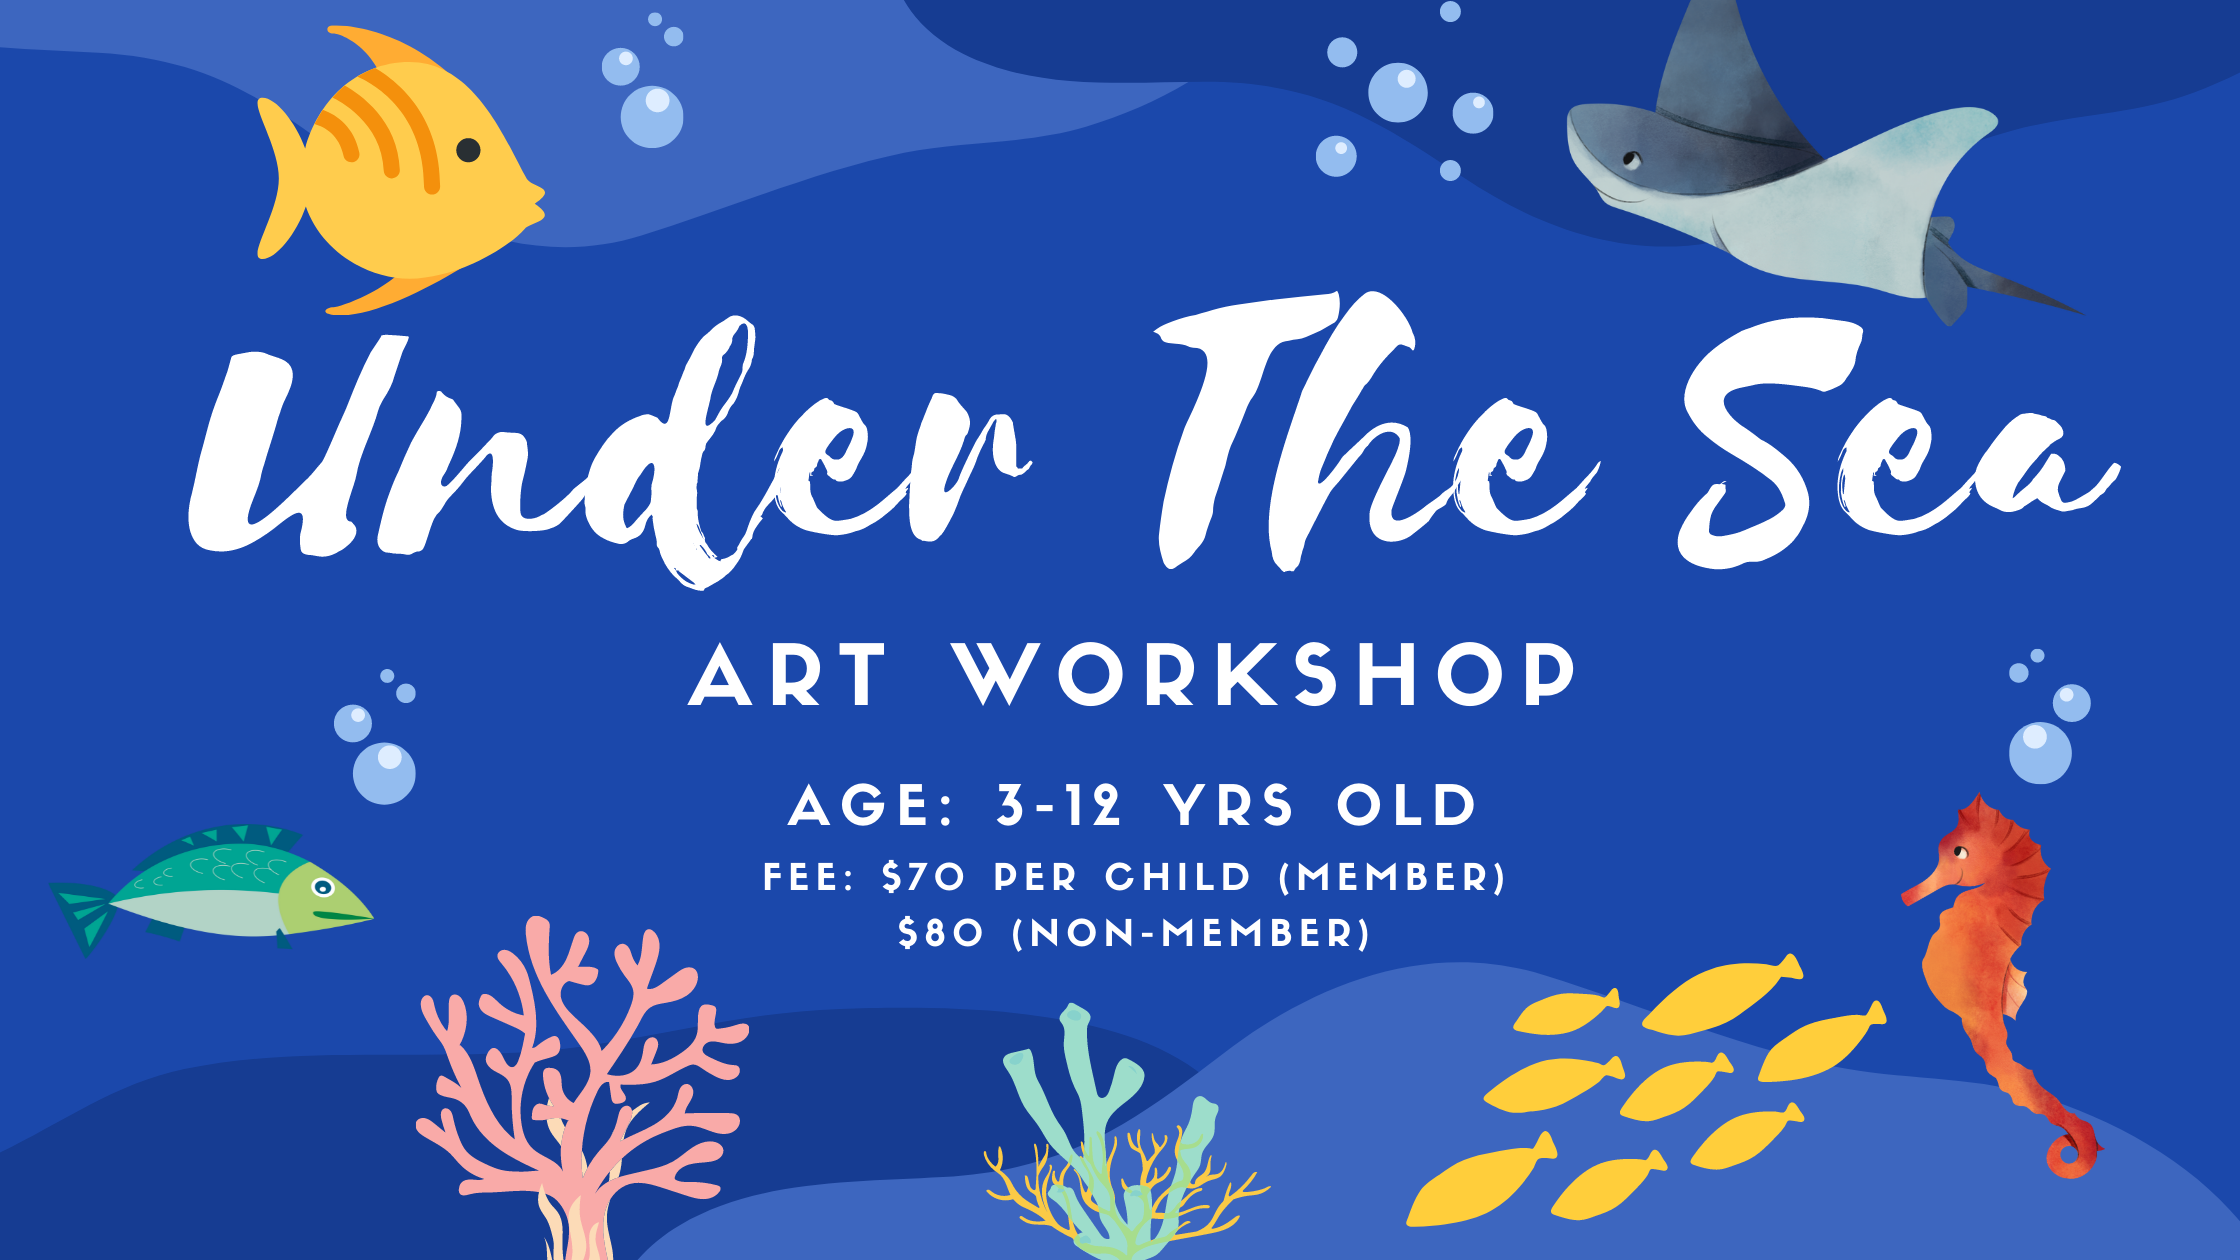 Under the sea art workshop